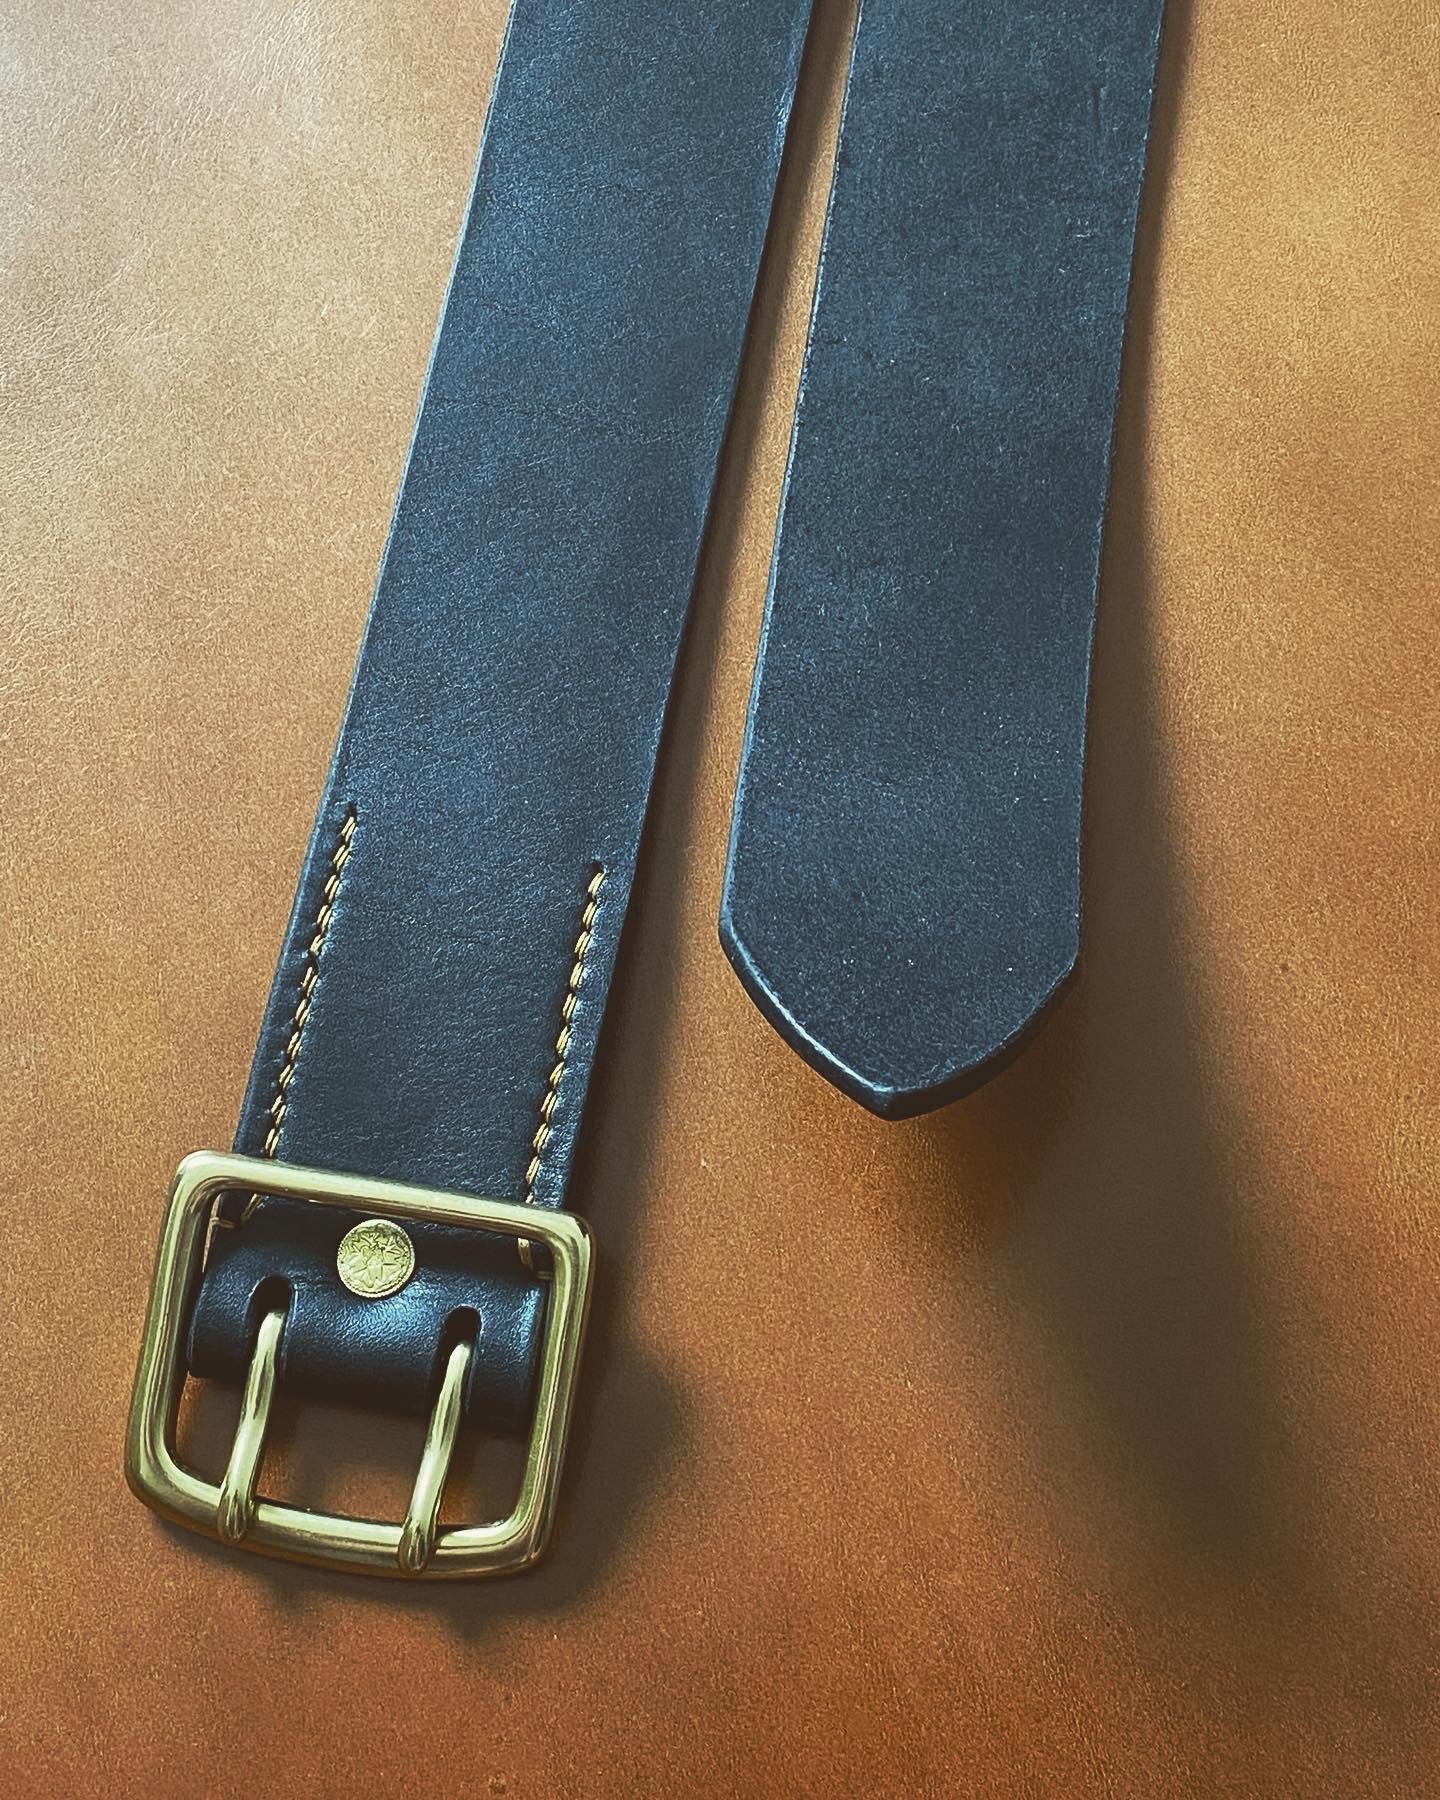 Cinturón de piel fabricado en piel "Roble Hermann" | Color - Marrón oscuro